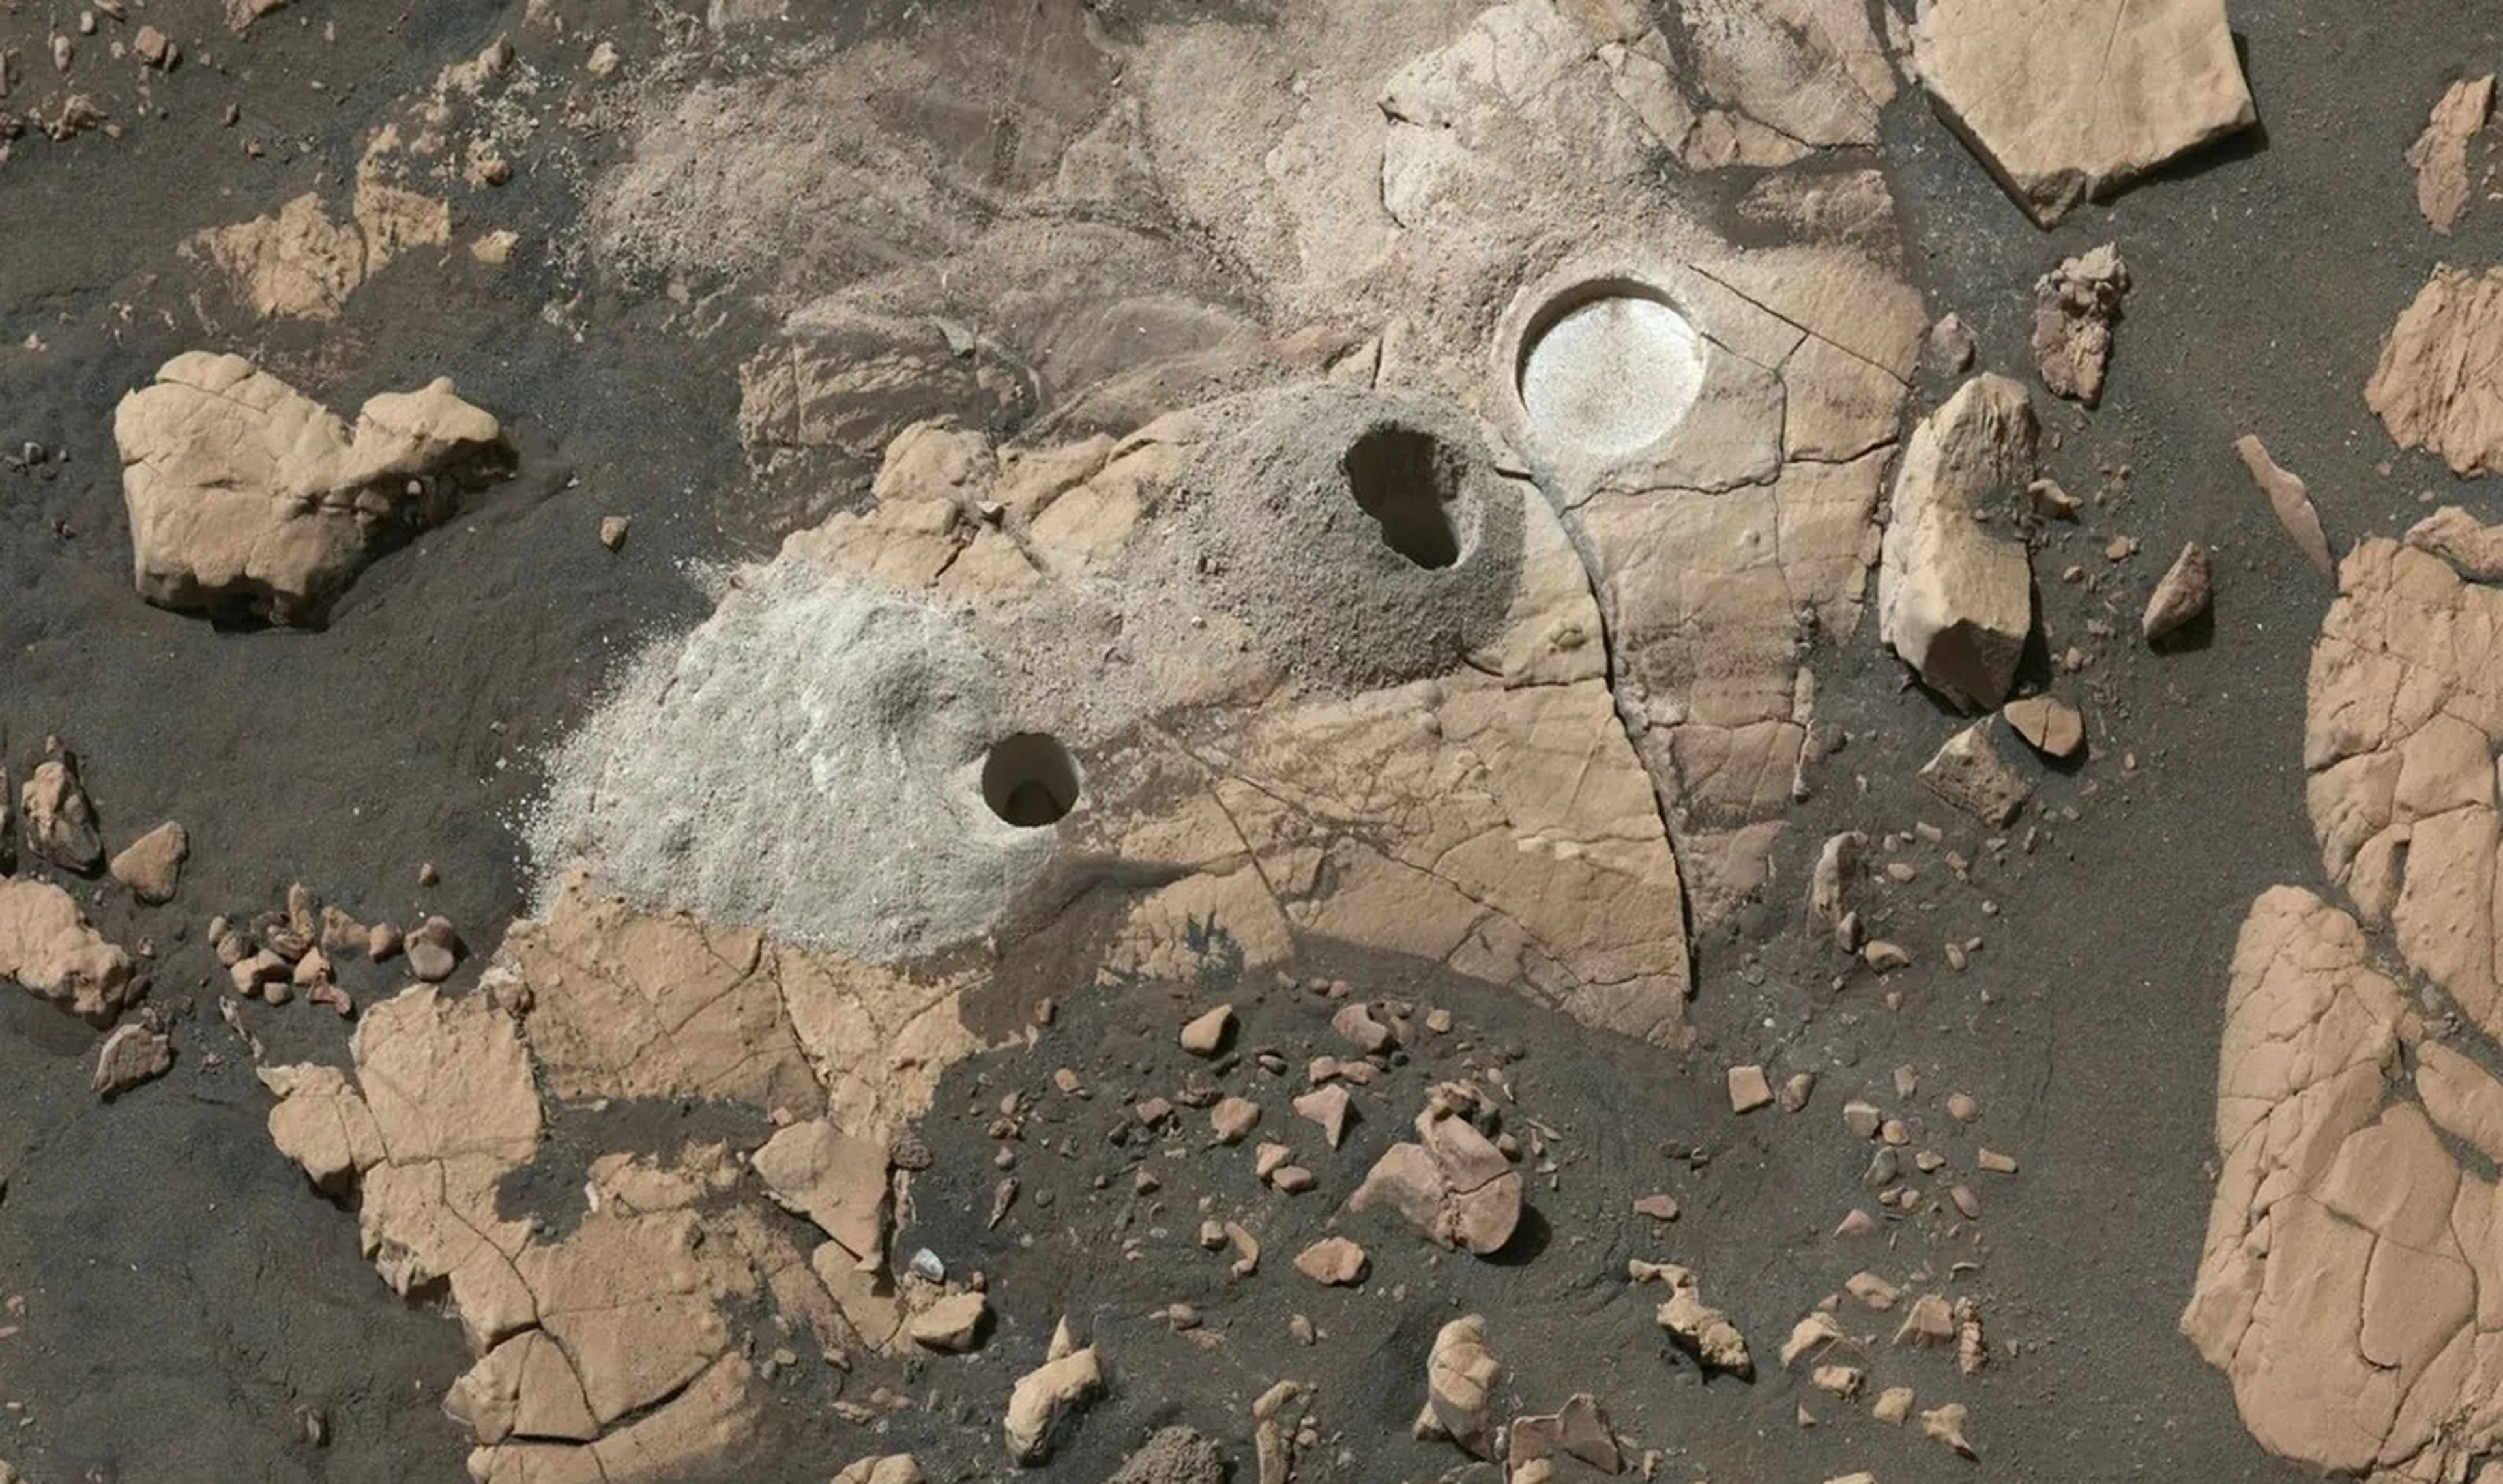 El rover Perseverance encuentra materia orgánica que puede ser clave para saber si hubo vida en Marte